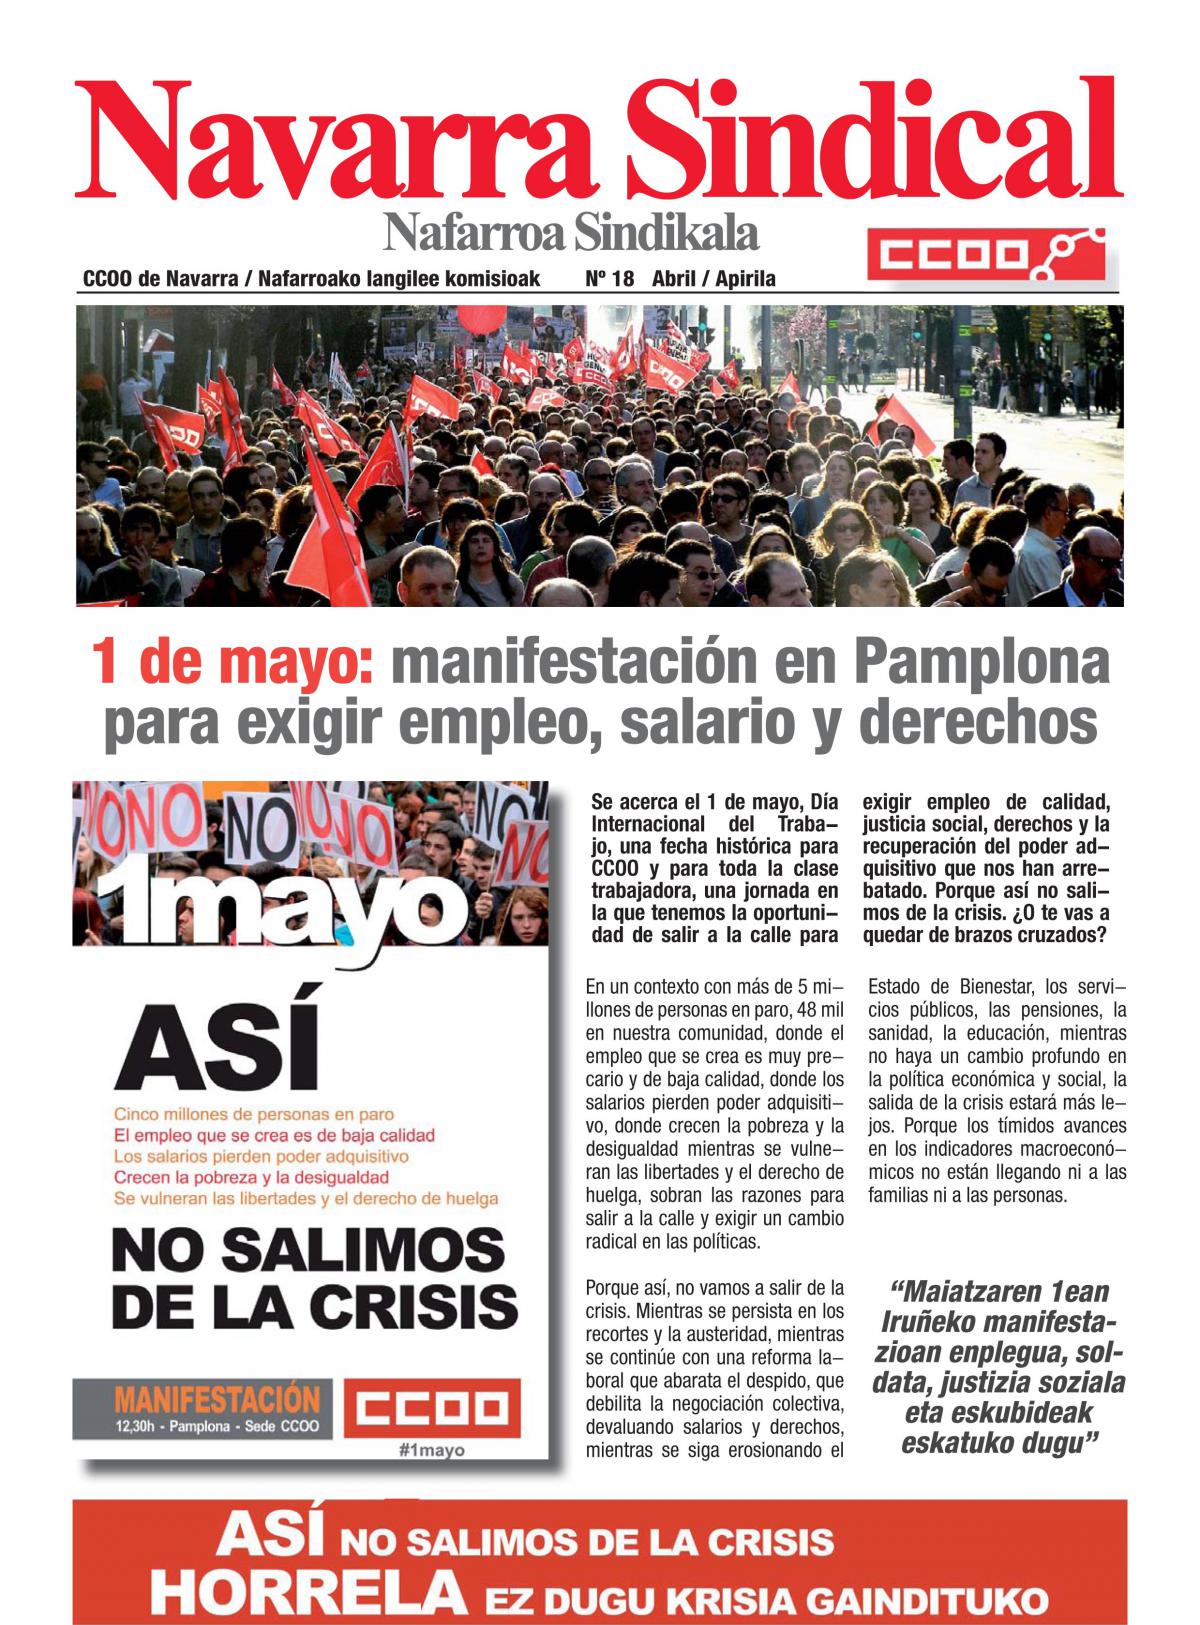 1 de mayo: manifestación en Pamplona para exigir empleo, salario y derechos